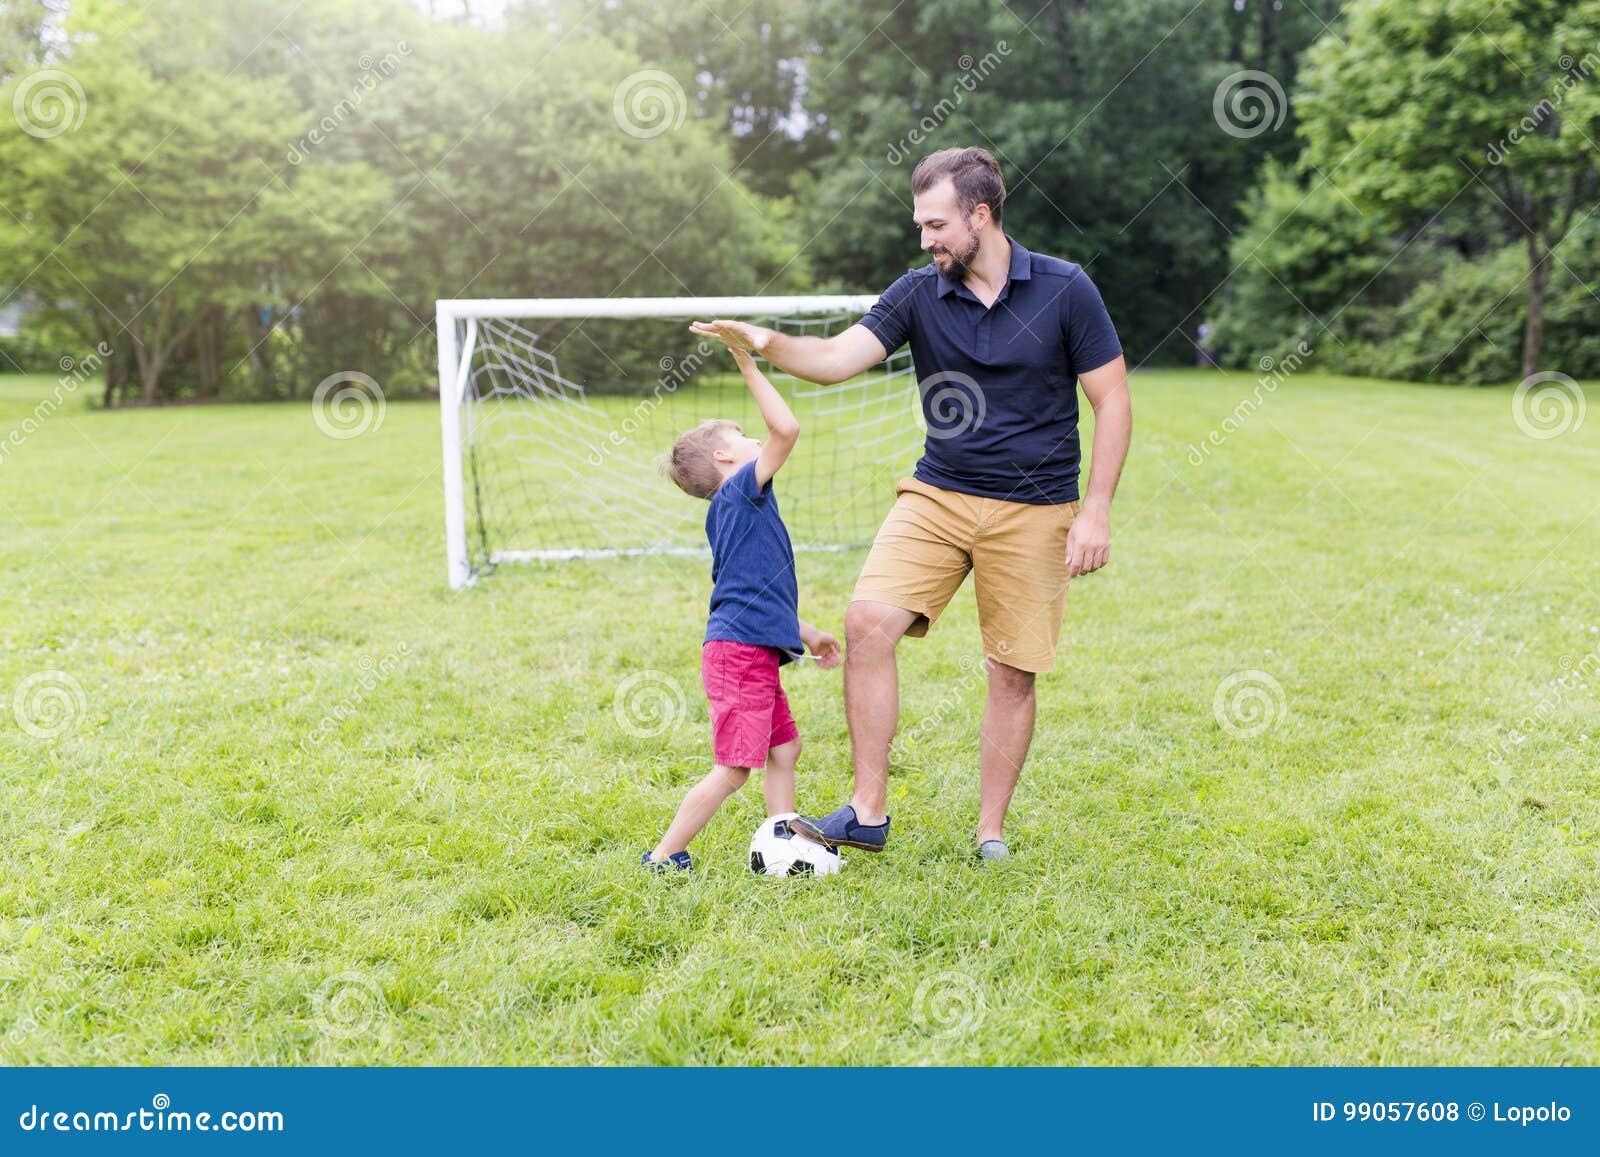 Папы играют в футбол. Игра в футбол с детьми и родителями. Футбол с сыном. Футбол с папой. Папа с сыном играют в футбол.